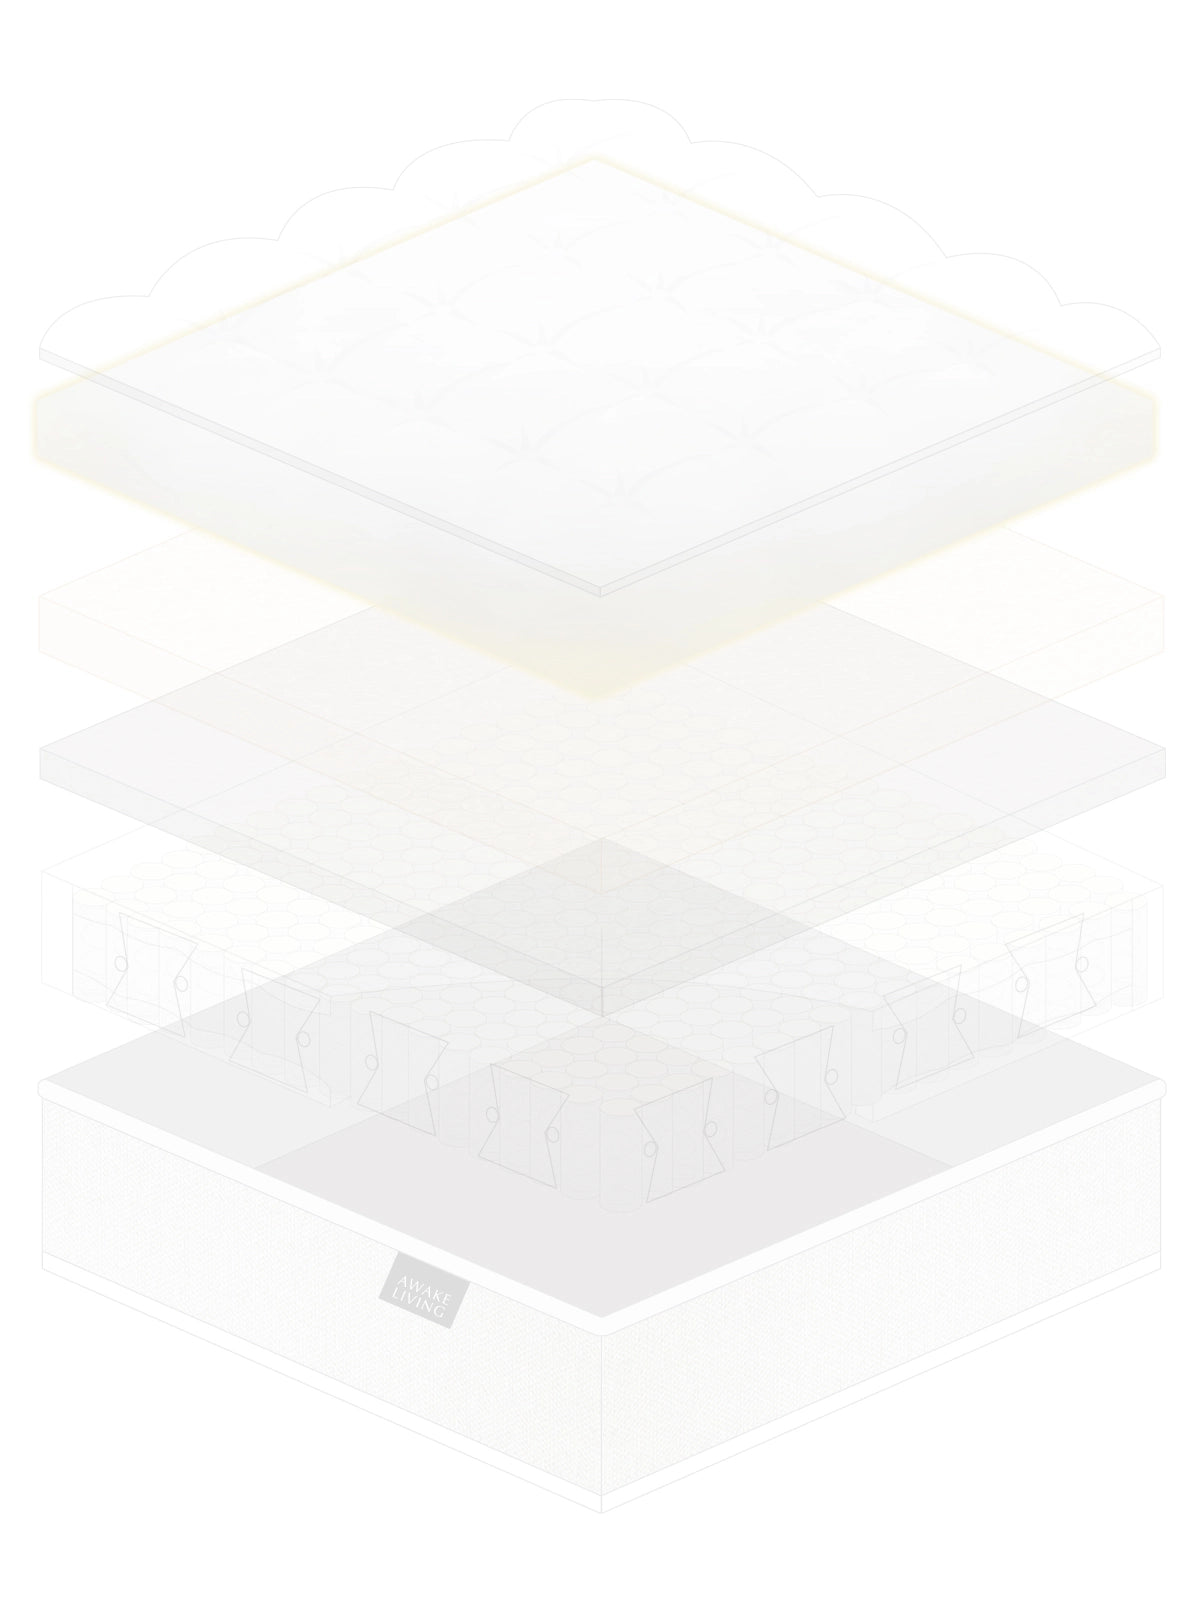 Lite 2.0 輕舒柔眠天絲獨立筒床墊分層圖 - 親膚透氣紡天鵝絨